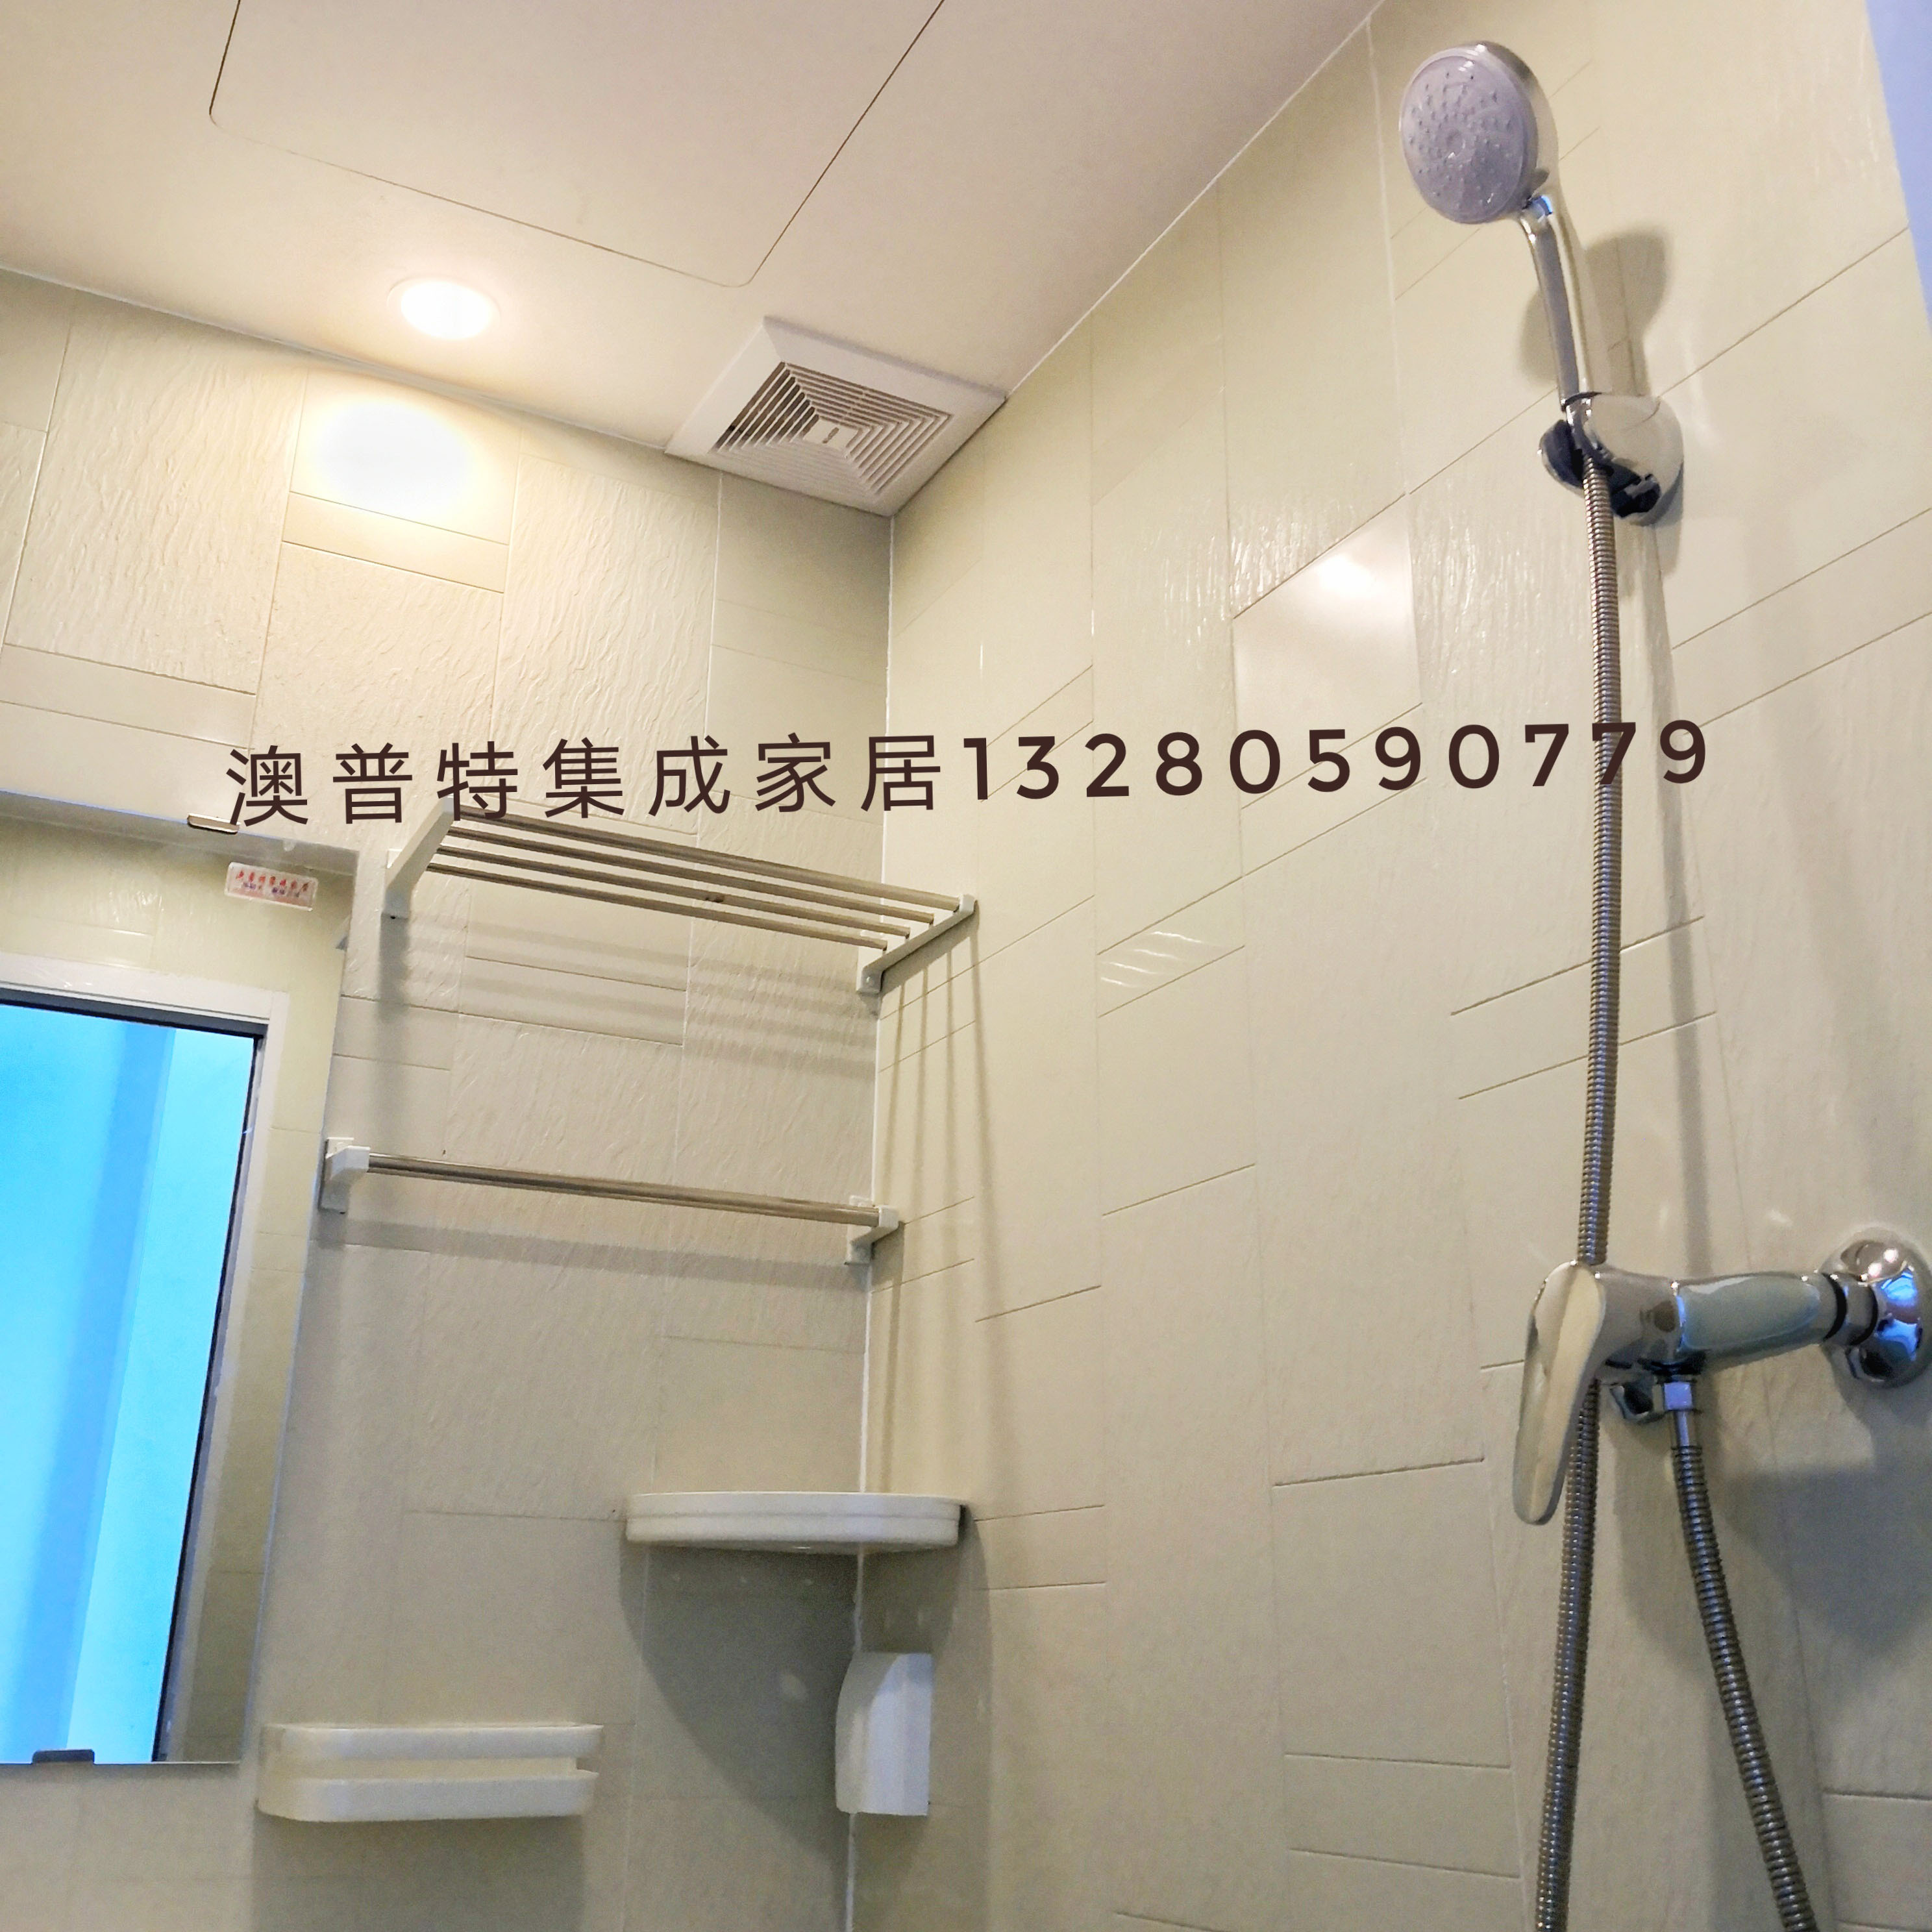 一体式整体卫生间 装配式整体卫生间 临沂澳普特集成家居 整体淋浴房 生产厂家